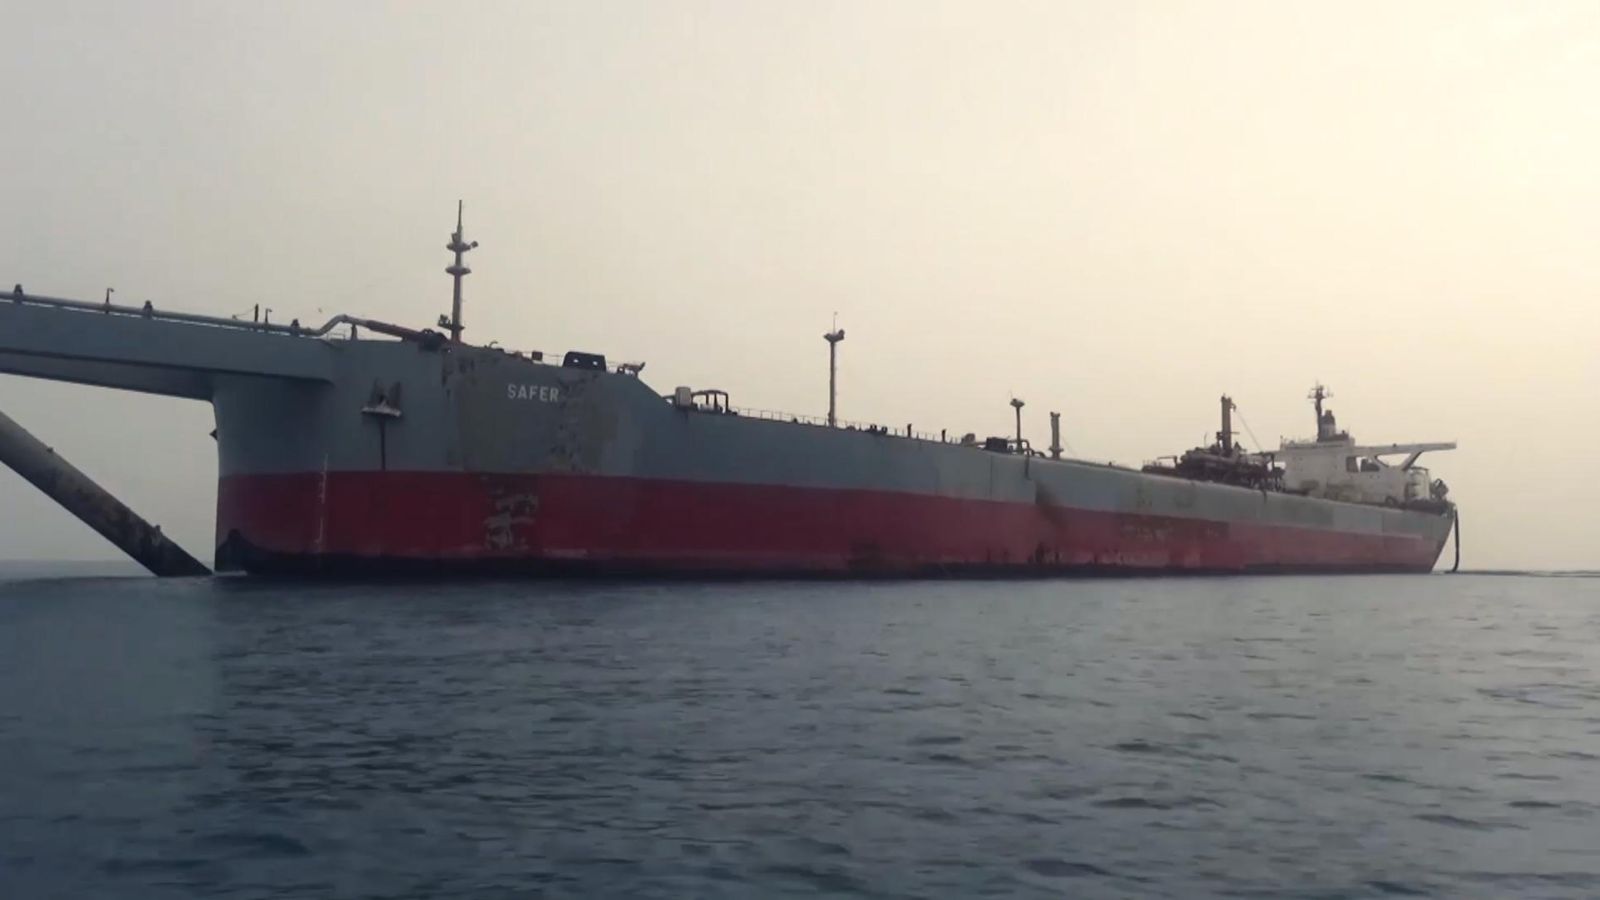 Die Vereinten Nationen sagen, dass der riesige Tanker, der vor der jemenitischen Küste vor Anker liegt, wahrscheinlich jeden Moment sinken oder explodieren wird